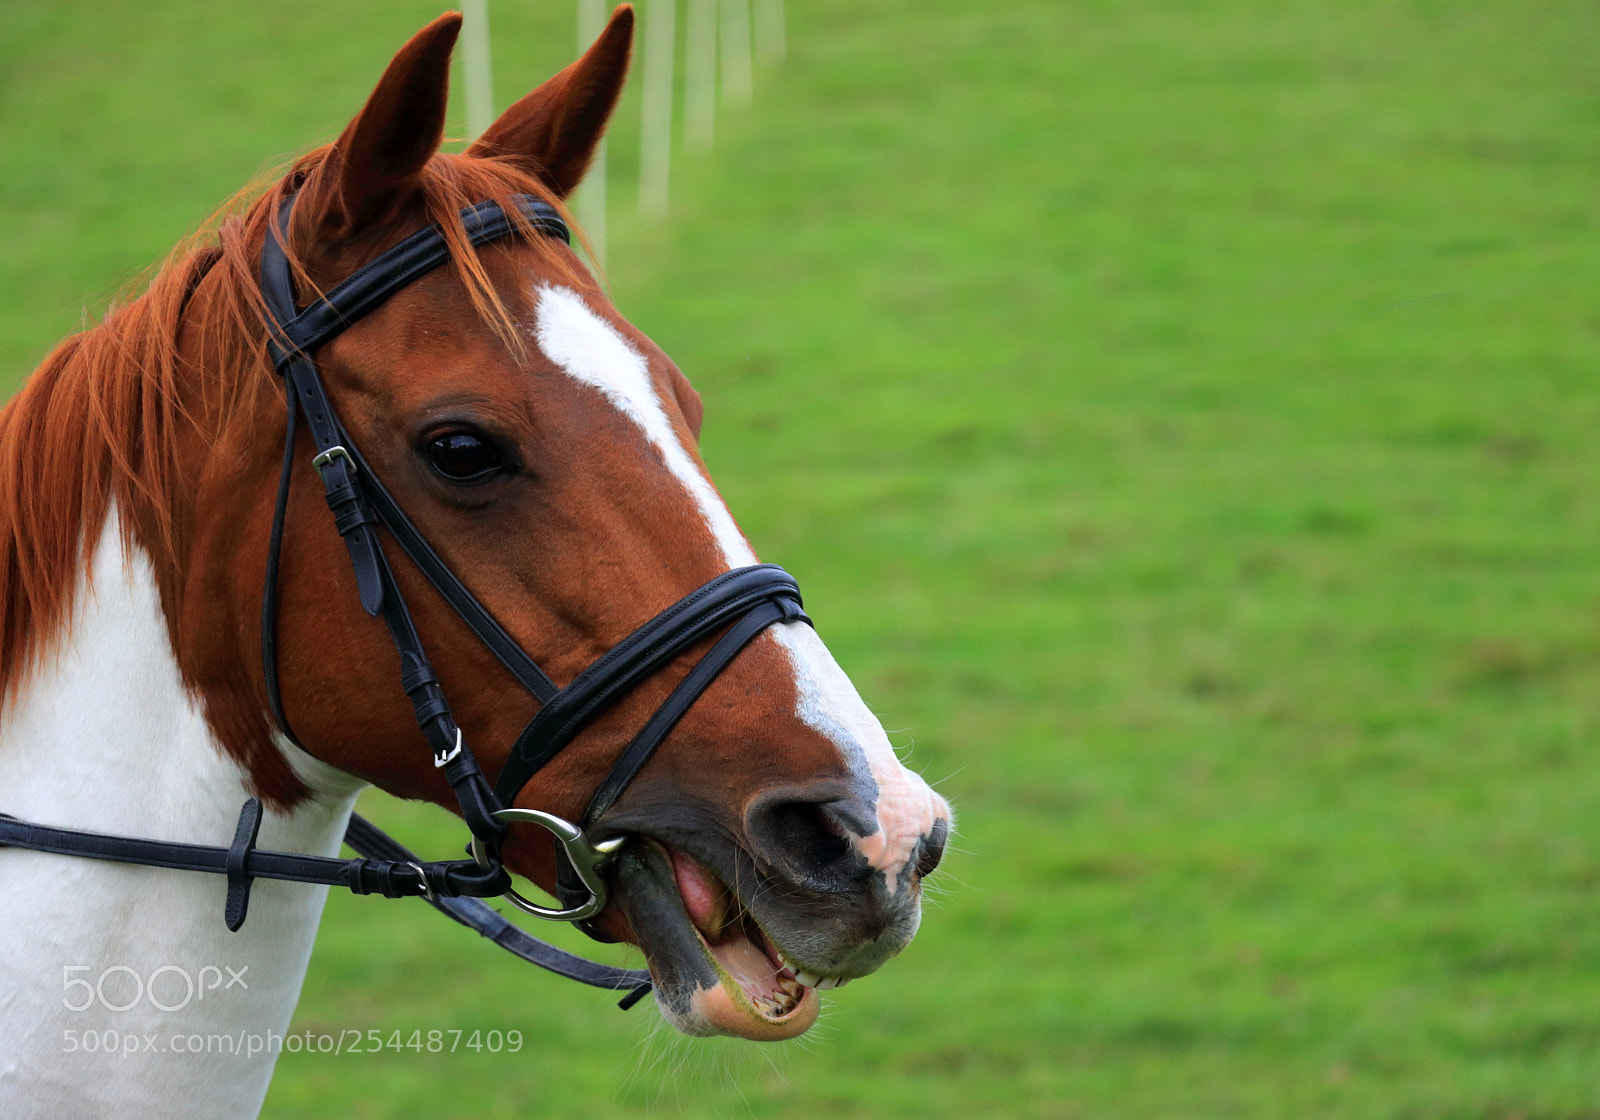 Canon EOS 70D sample photo. Horse portrait. photography